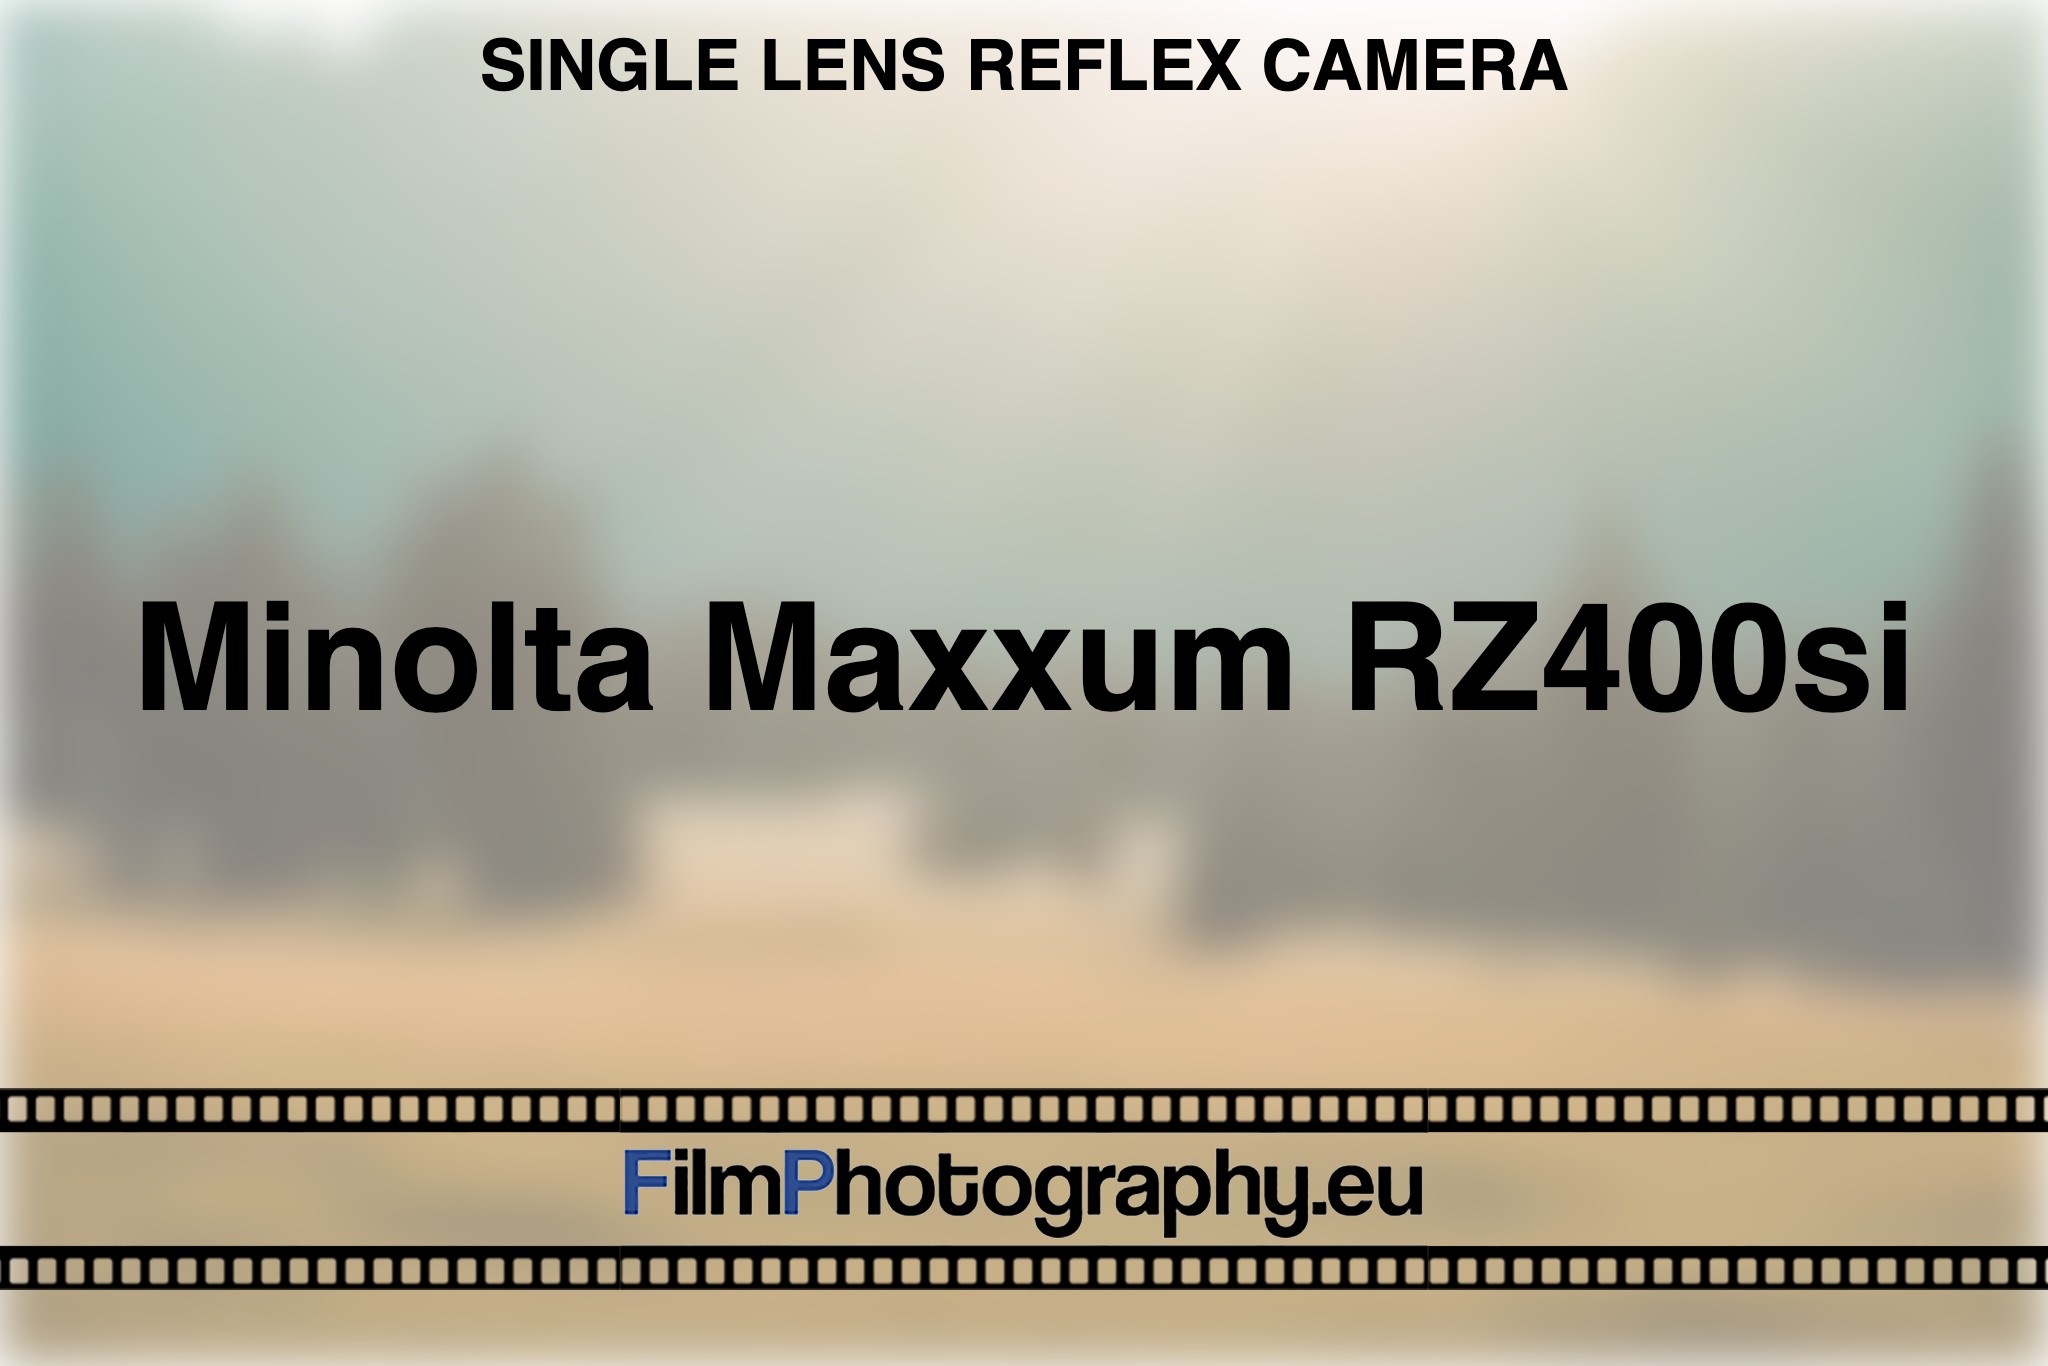 minolta-maxxum-rz400si-single-lens-reflex-camera-bnv